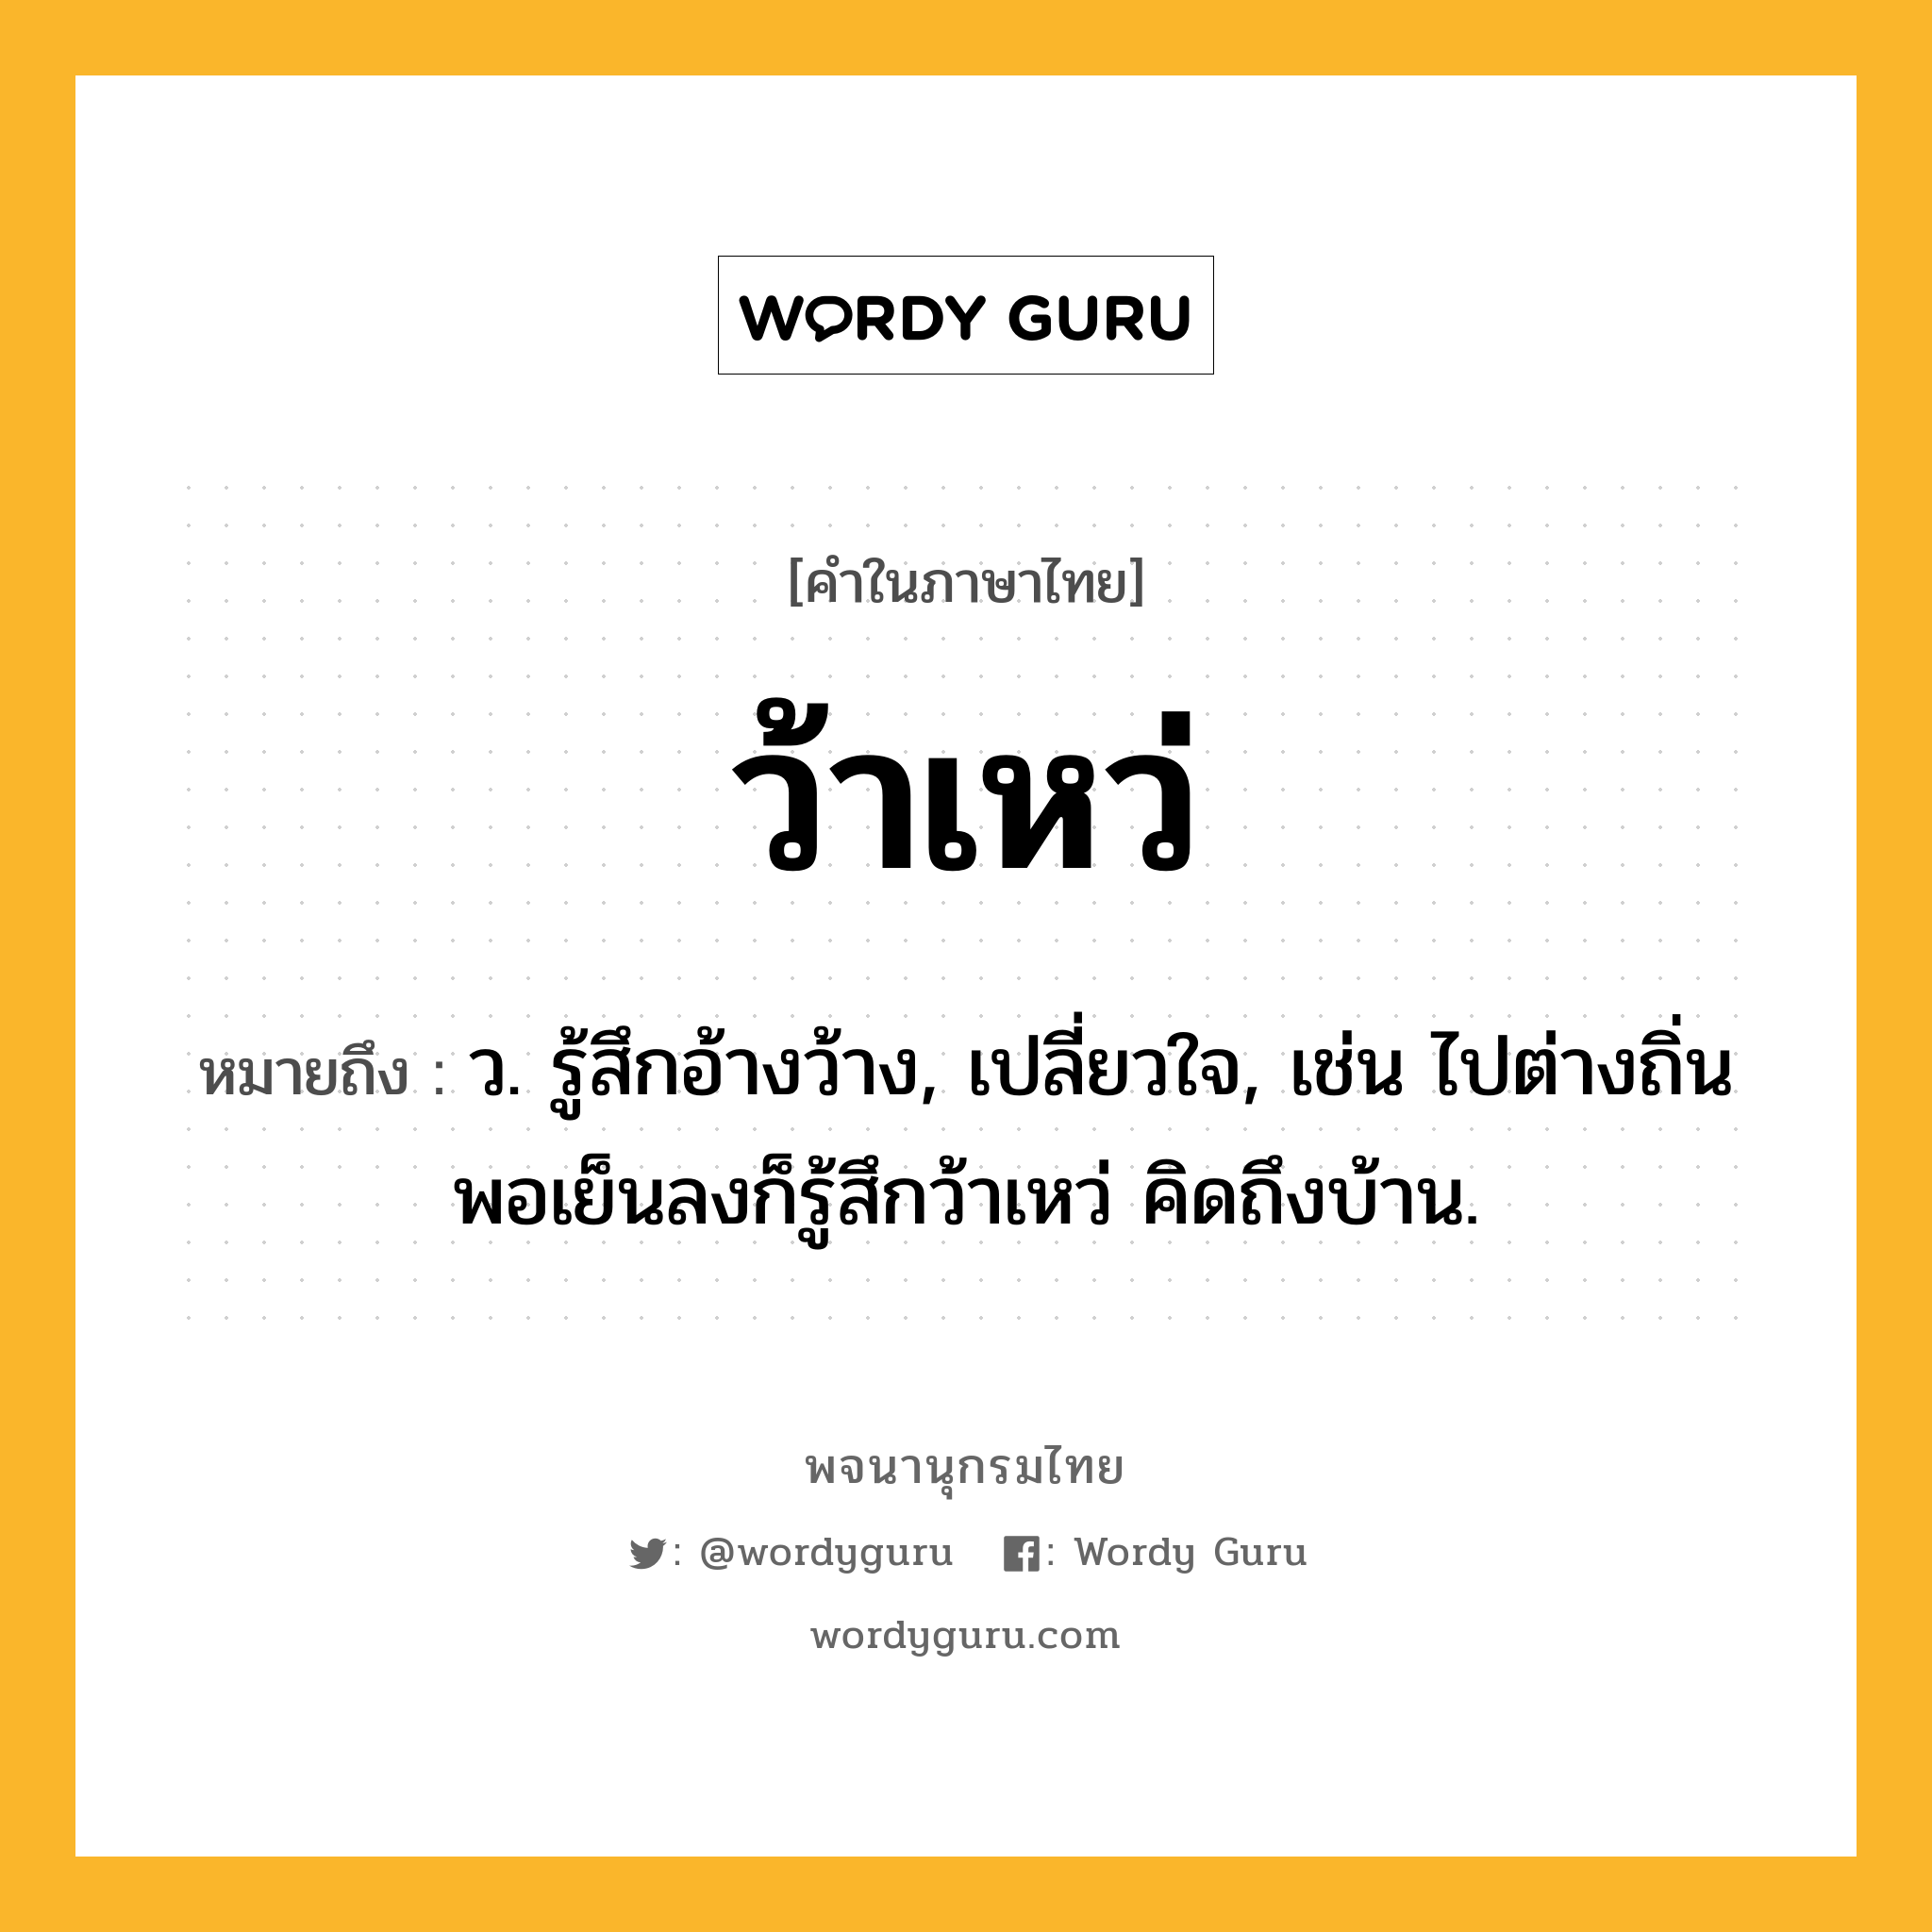 ว้าเหว่ หมายถึงอะไร?, คำในภาษาไทย ว้าเหว่ หมายถึง ว. รู้สึกอ้างว้าง, เปลี่ยวใจ, เช่น ไปต่างถิ่น พอเย็นลงก็รู้สึกว้าเหว่ คิดถึงบ้าน.